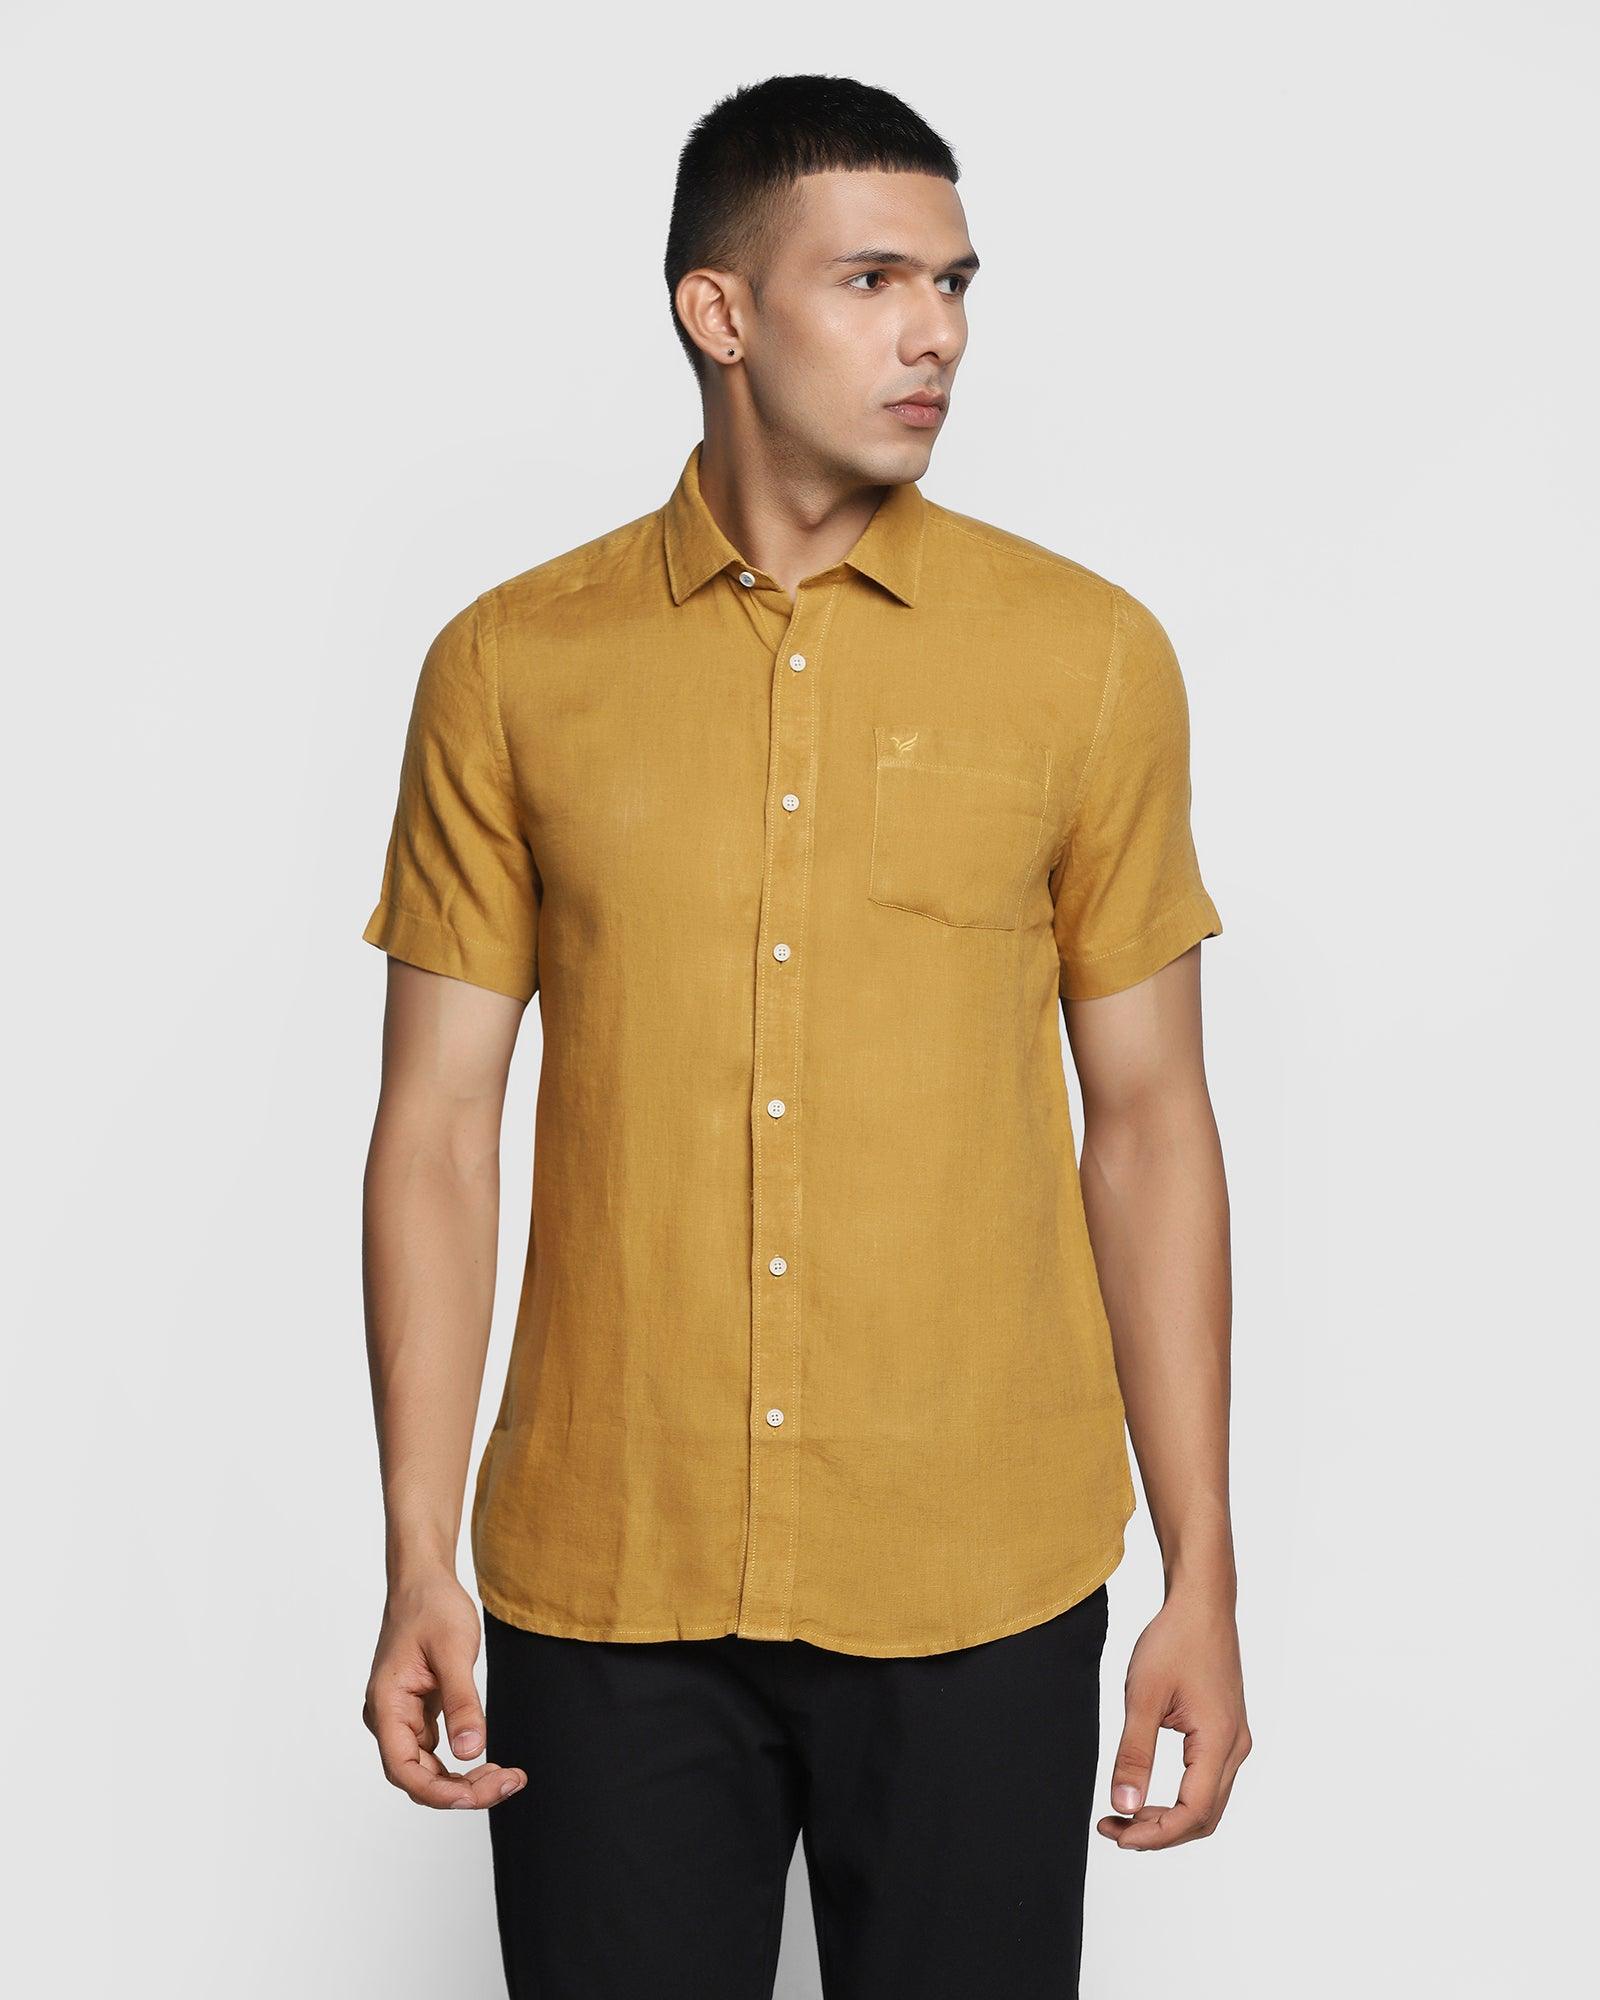 Linen Formal Half Sleeve Mustard Solid Shirt - Bowen